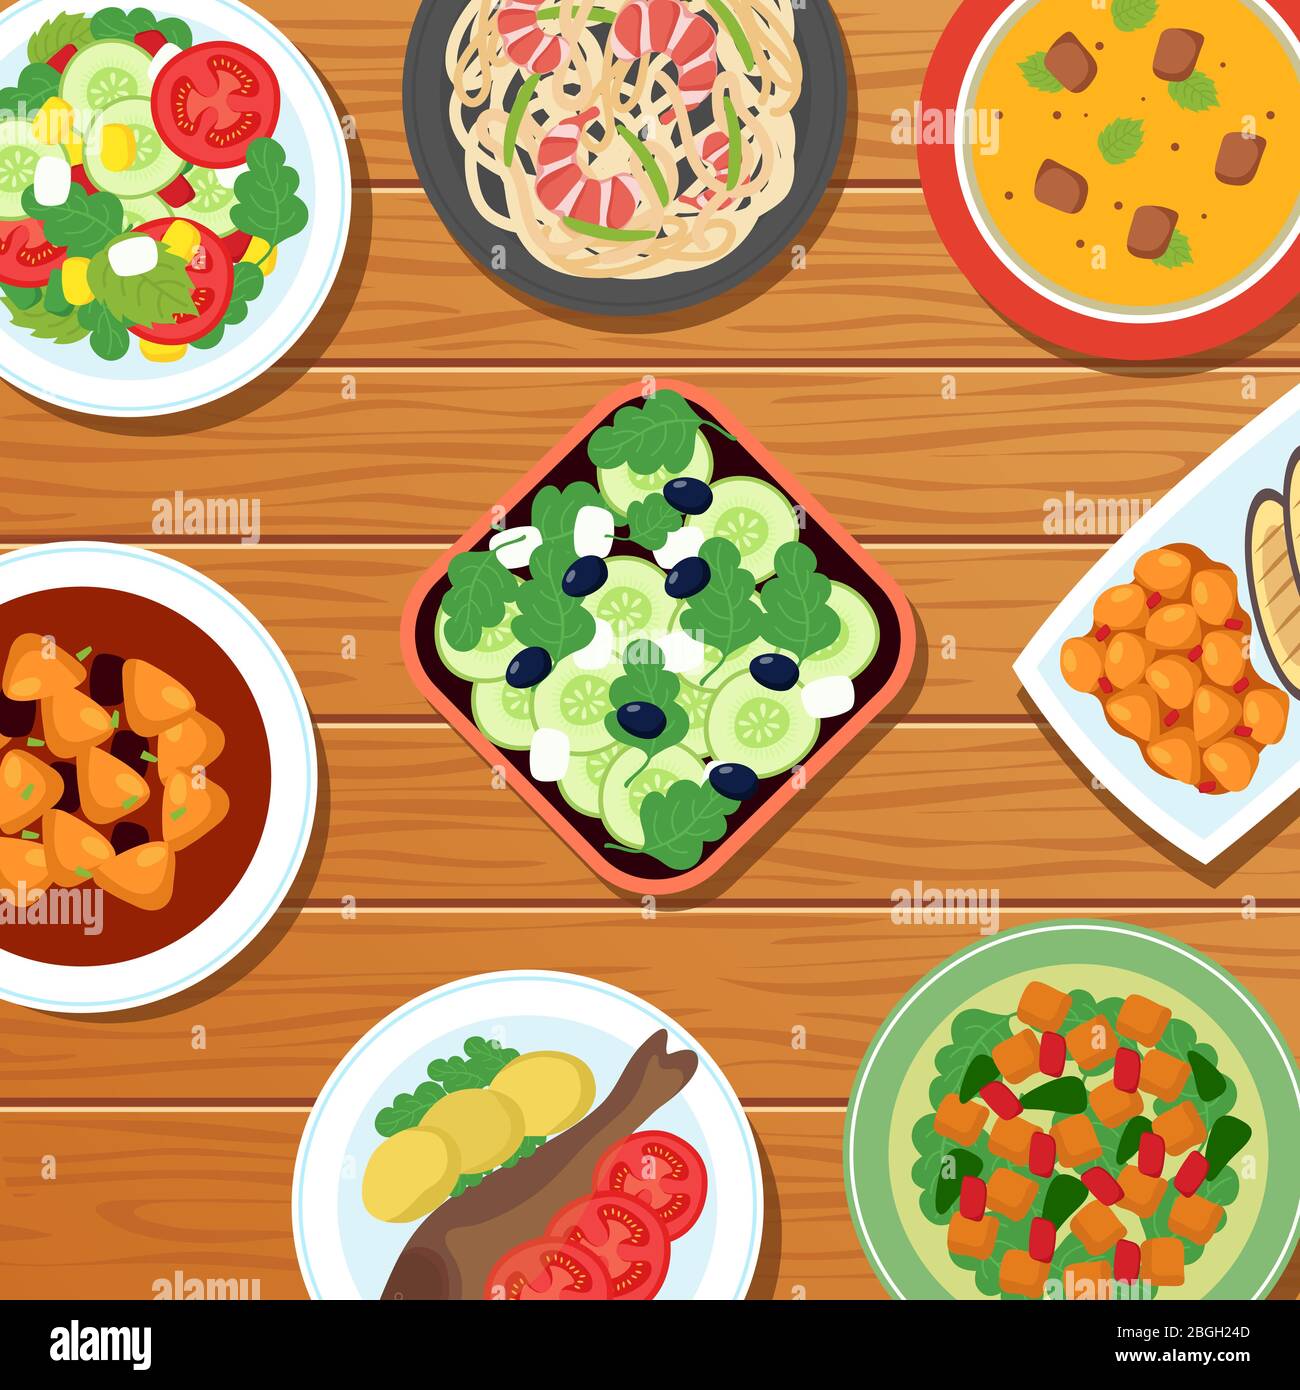 Repas thaïlandais asiatique sain sur le plan de table. Illustration vectorielle de plats de légumes, de viande et de poisson. Cuisine thaïlande, fruits de mer et salade orientale Illustration de Vecteur